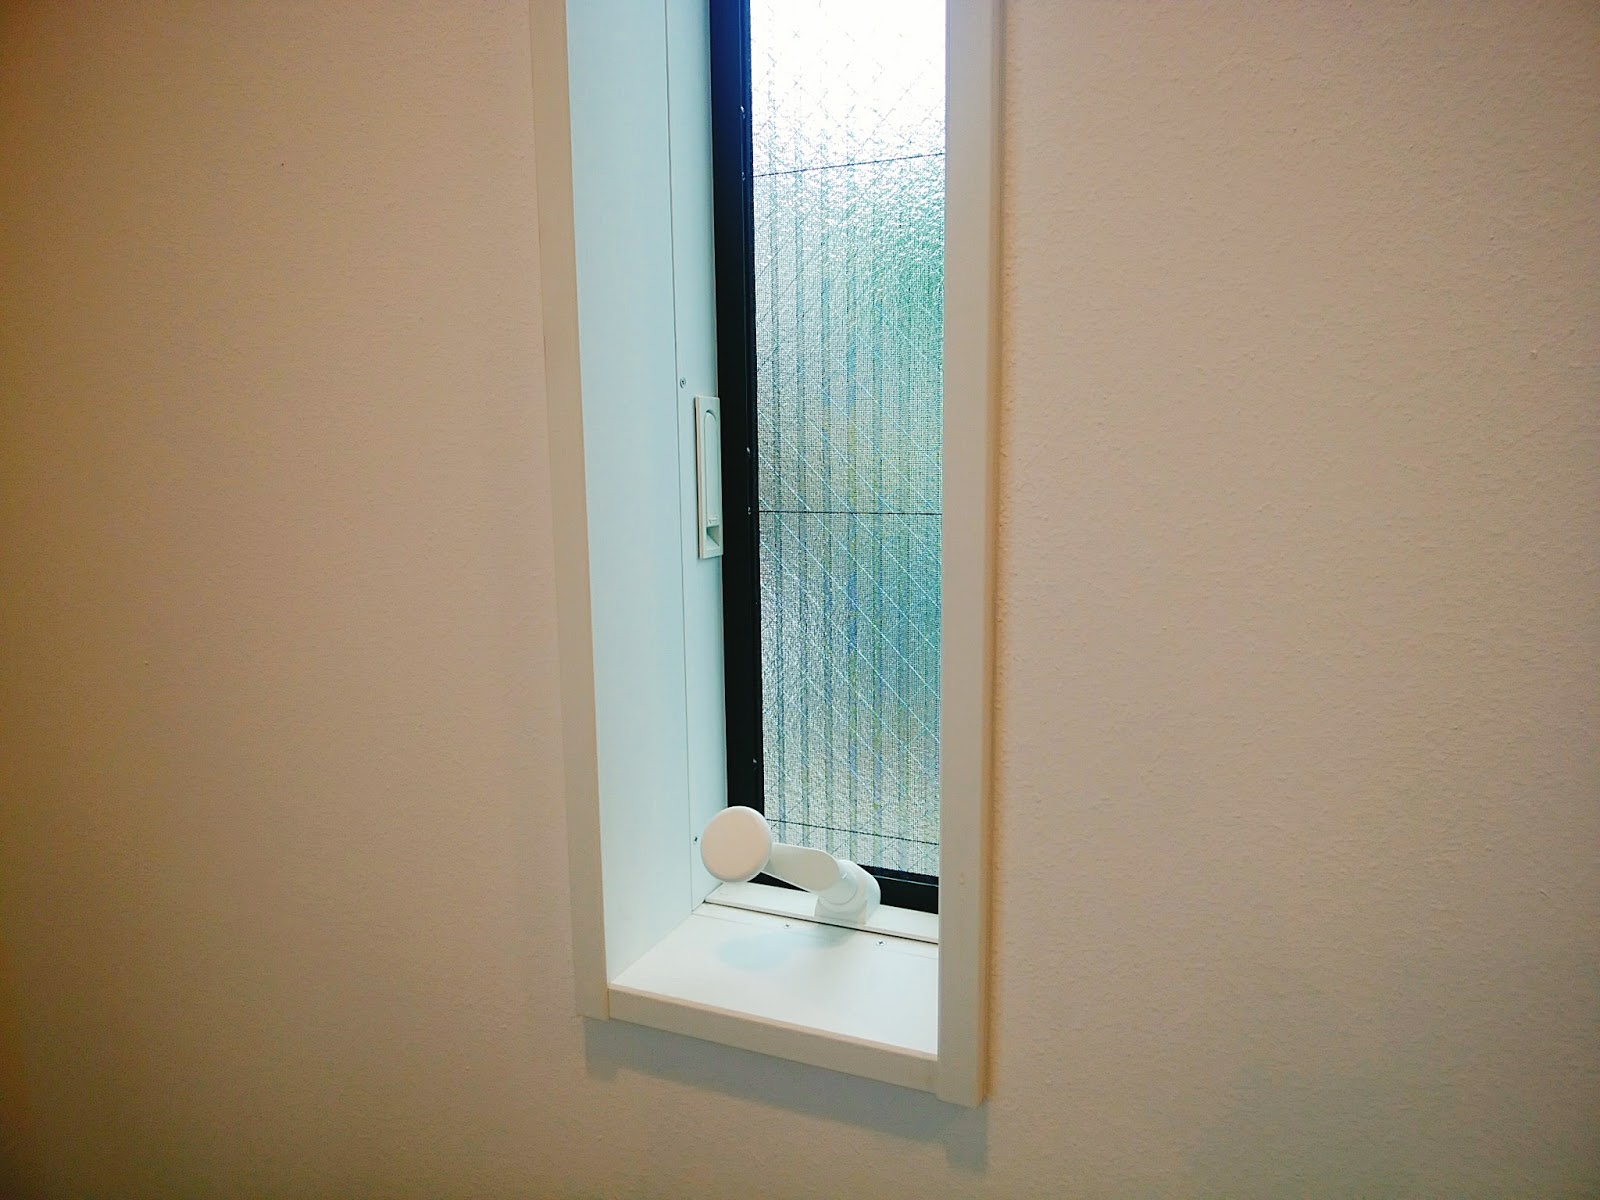 防犯対策に1階の窓を小さくしたら、家事が楽。カーテンもいらない。 とりあえず。